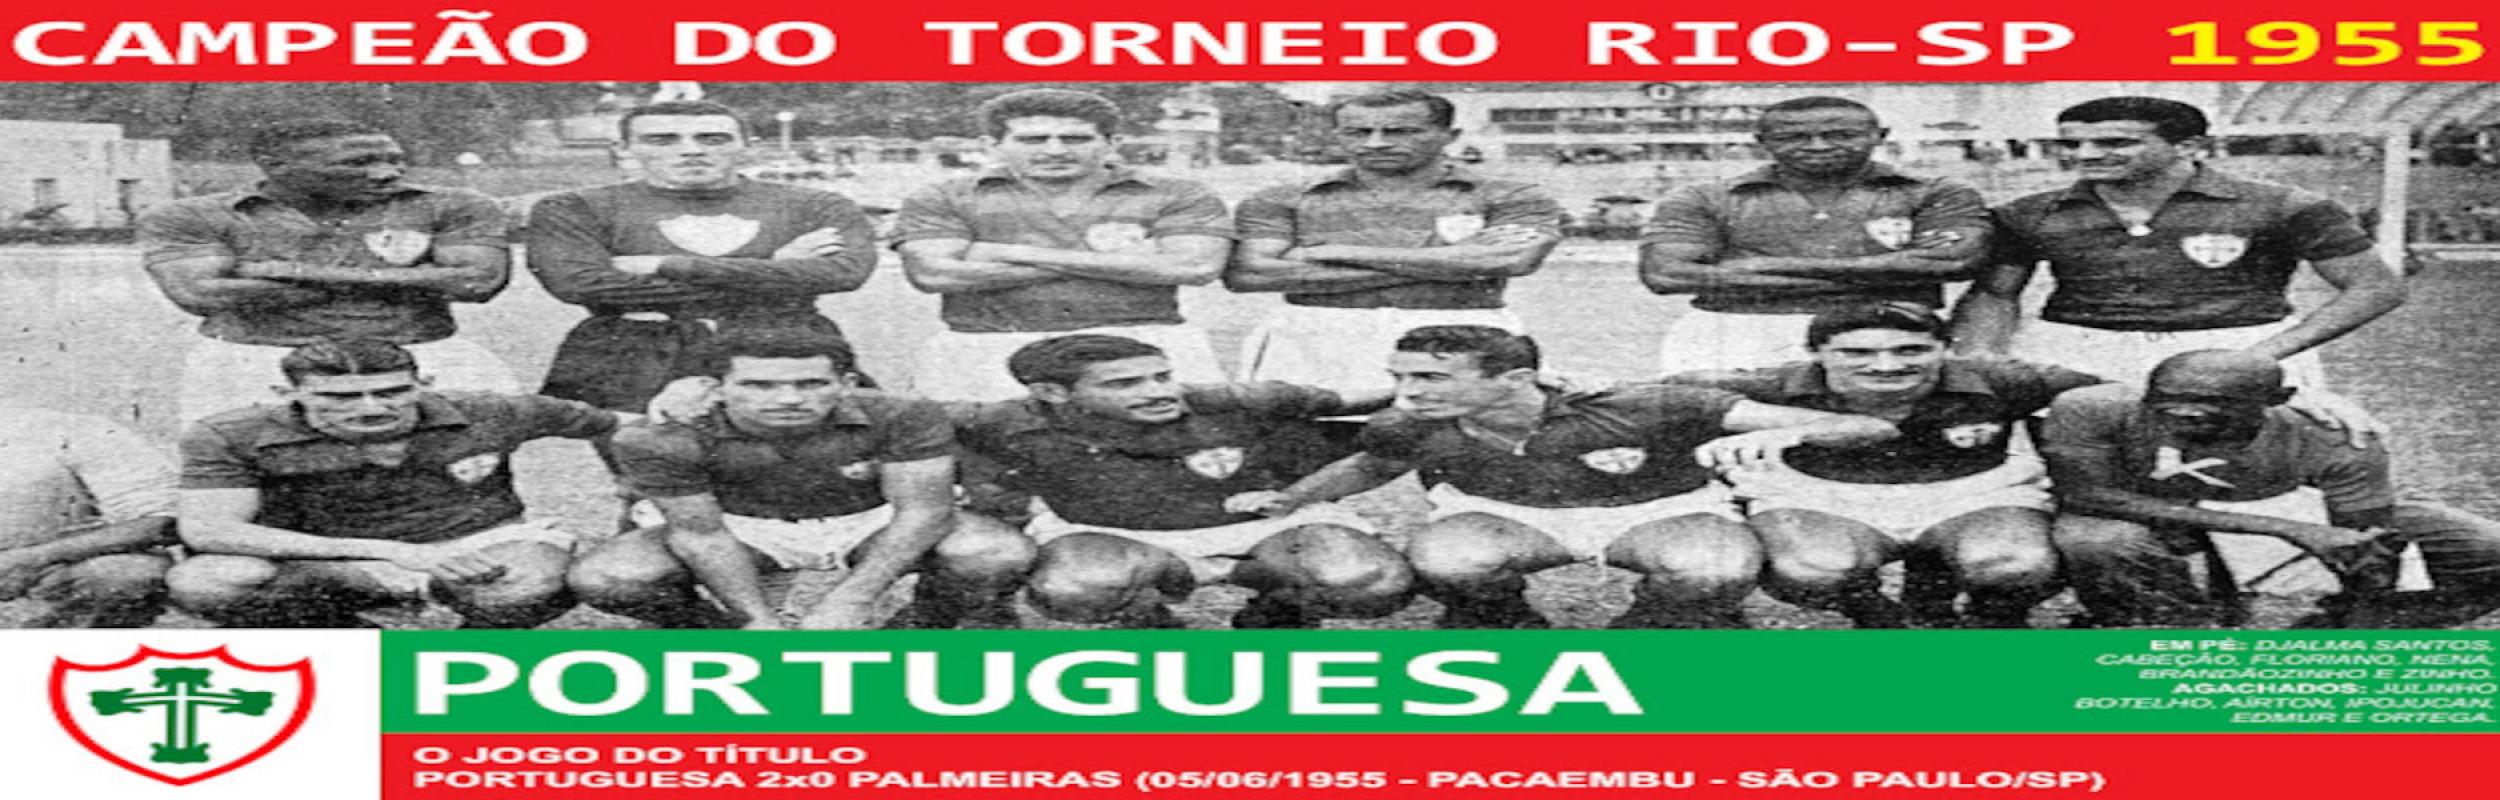 Torneio Rio-São Paulo 1955